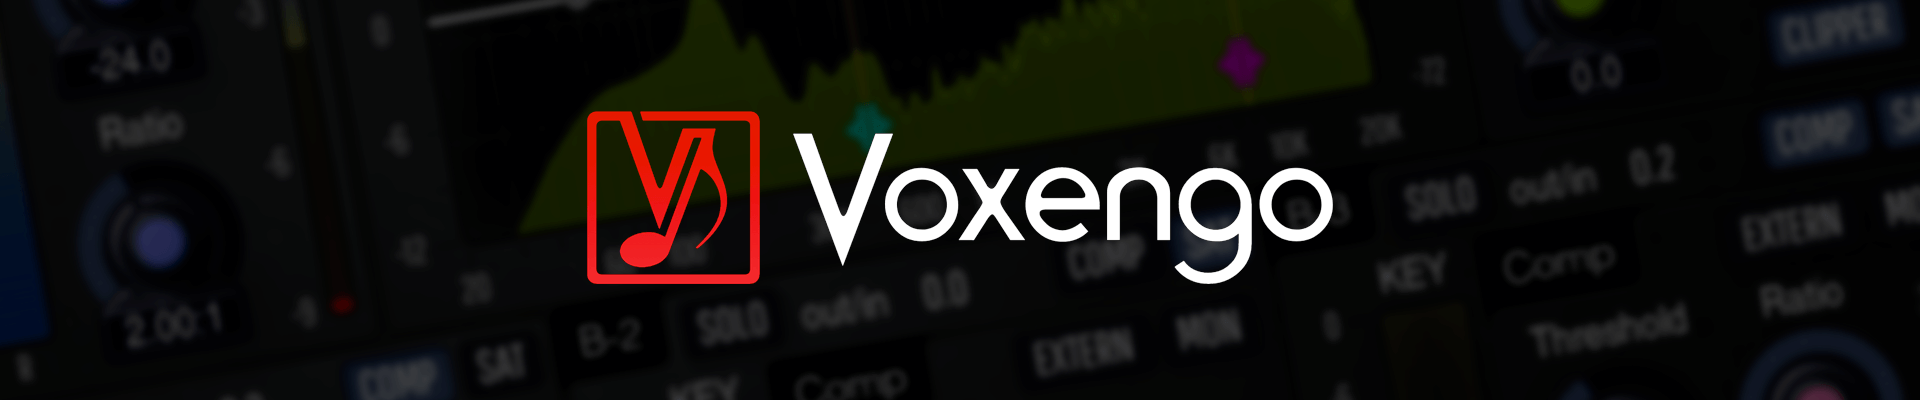 Voxengo Banner